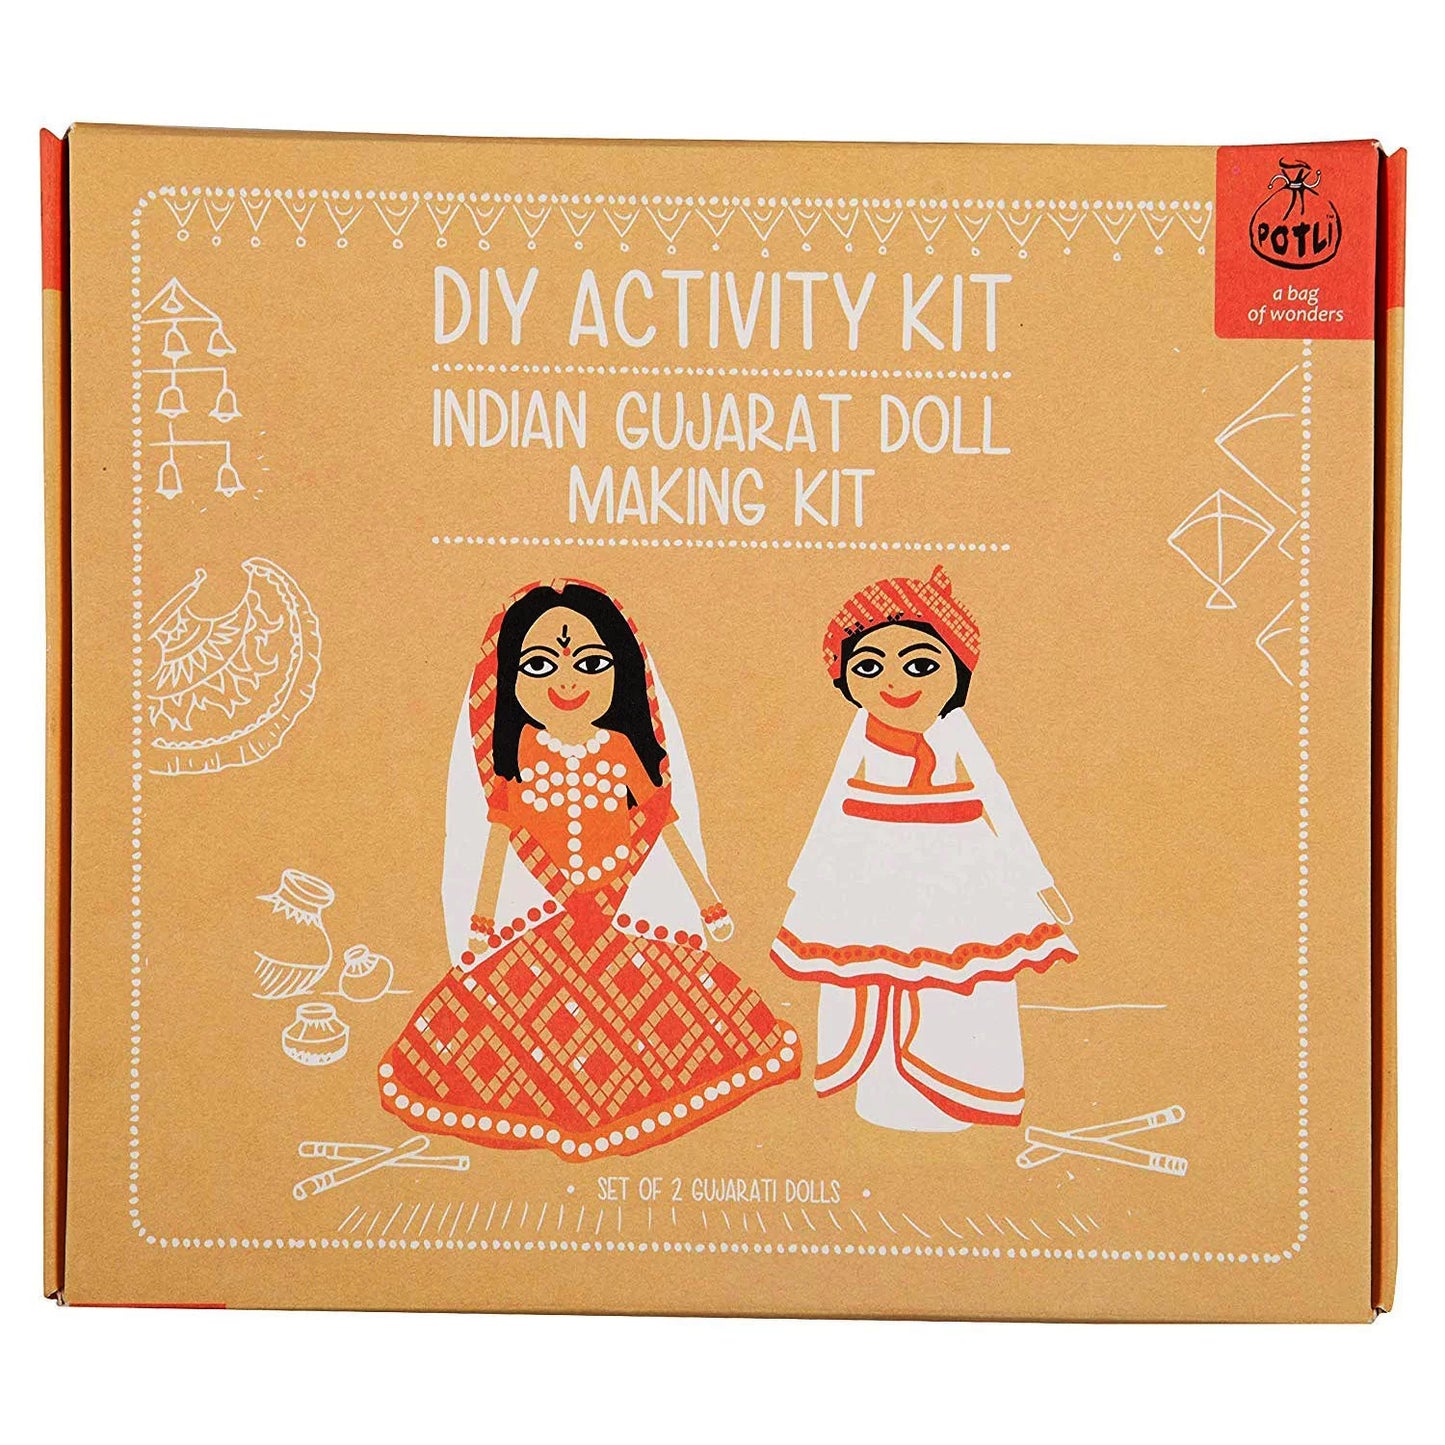 DIY Indian Doll making Kit Gujarat